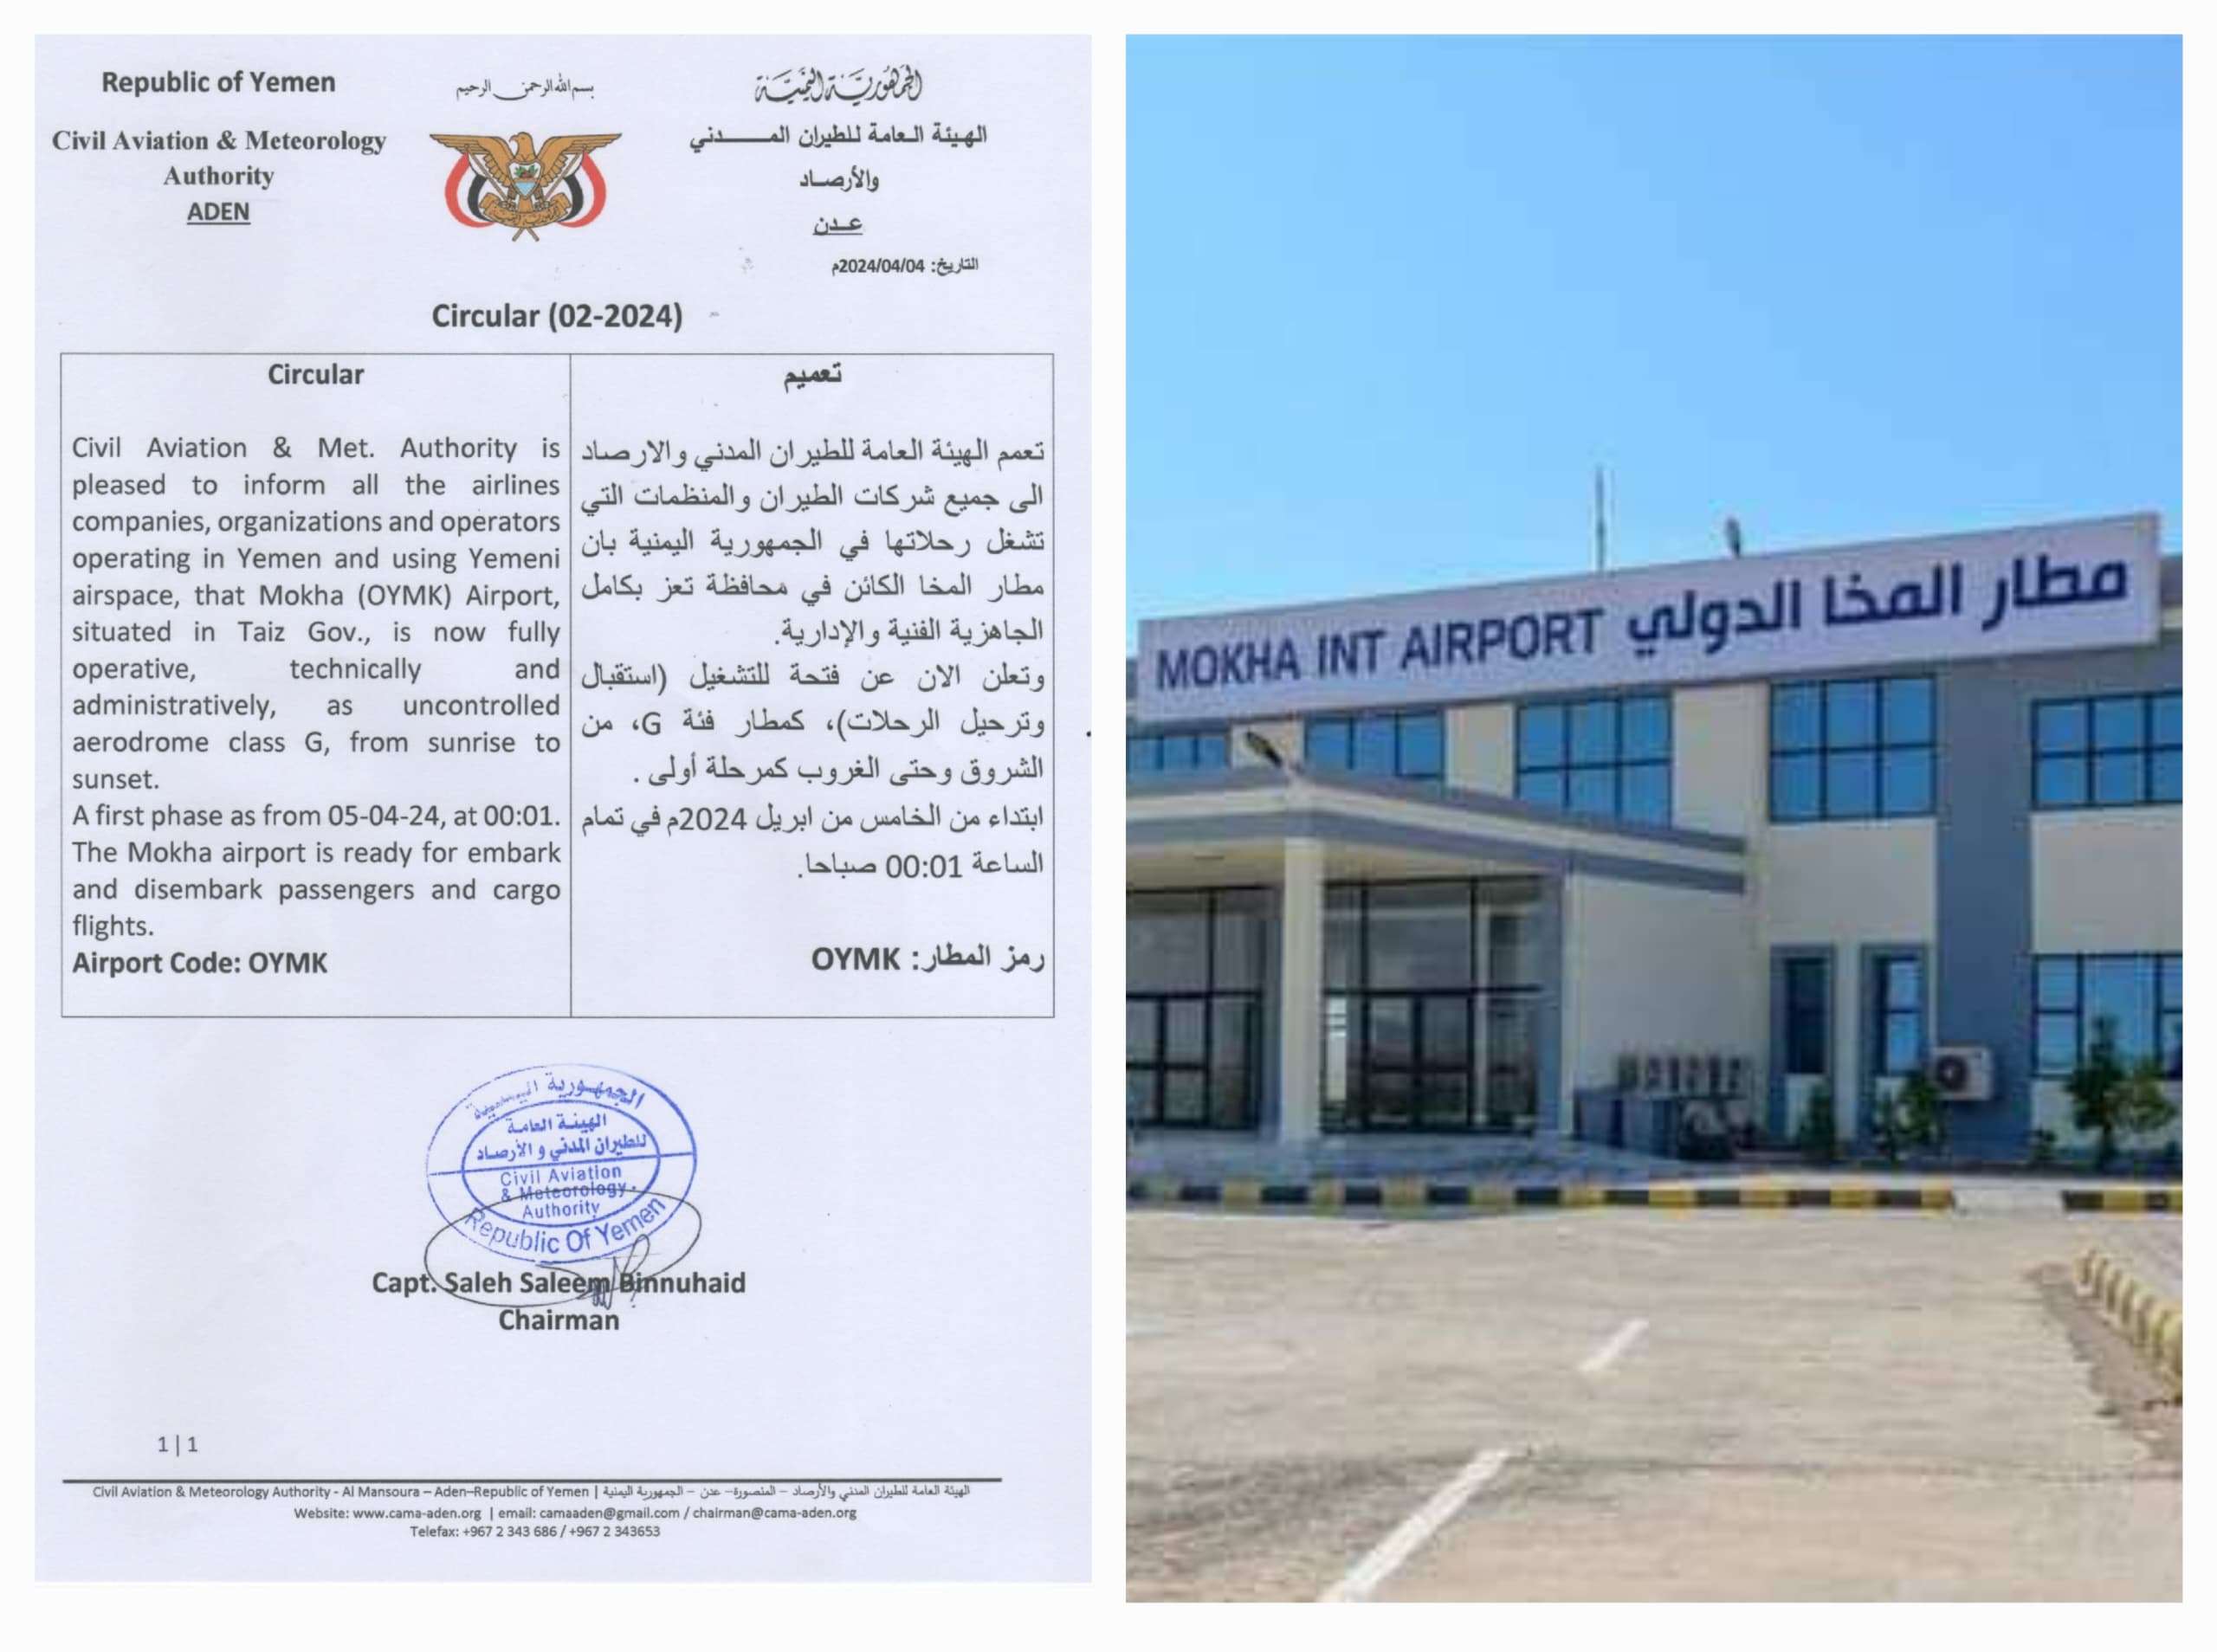 الإعلان رسميا عن فتح وتشغيل مطار المخا أمام الرحلات من يوم غد